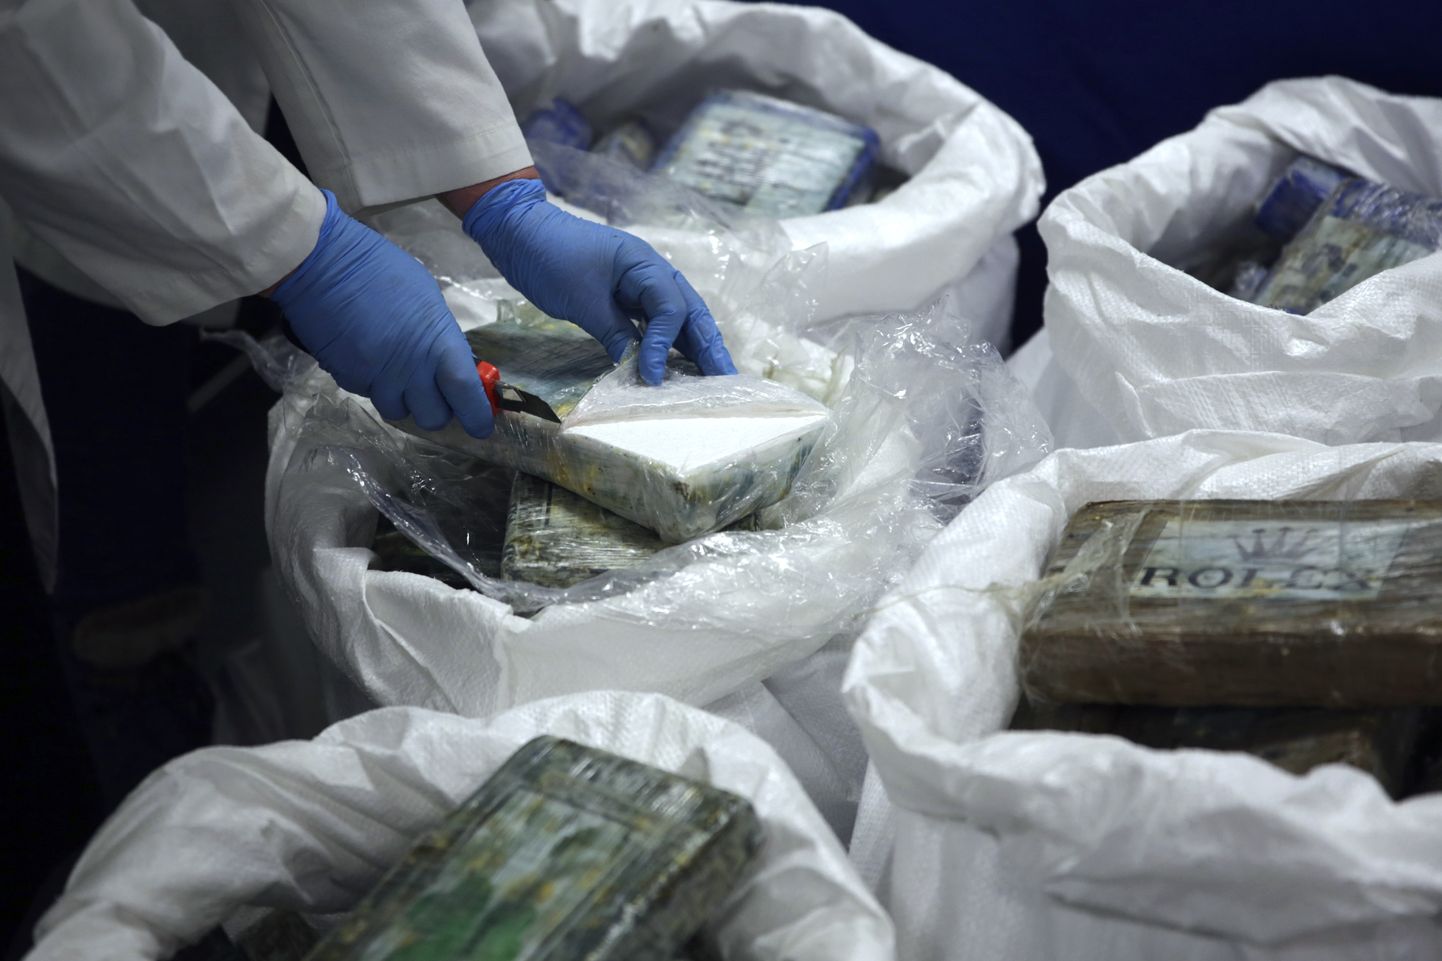 Portugali politseinik avab kokaiini pakke.